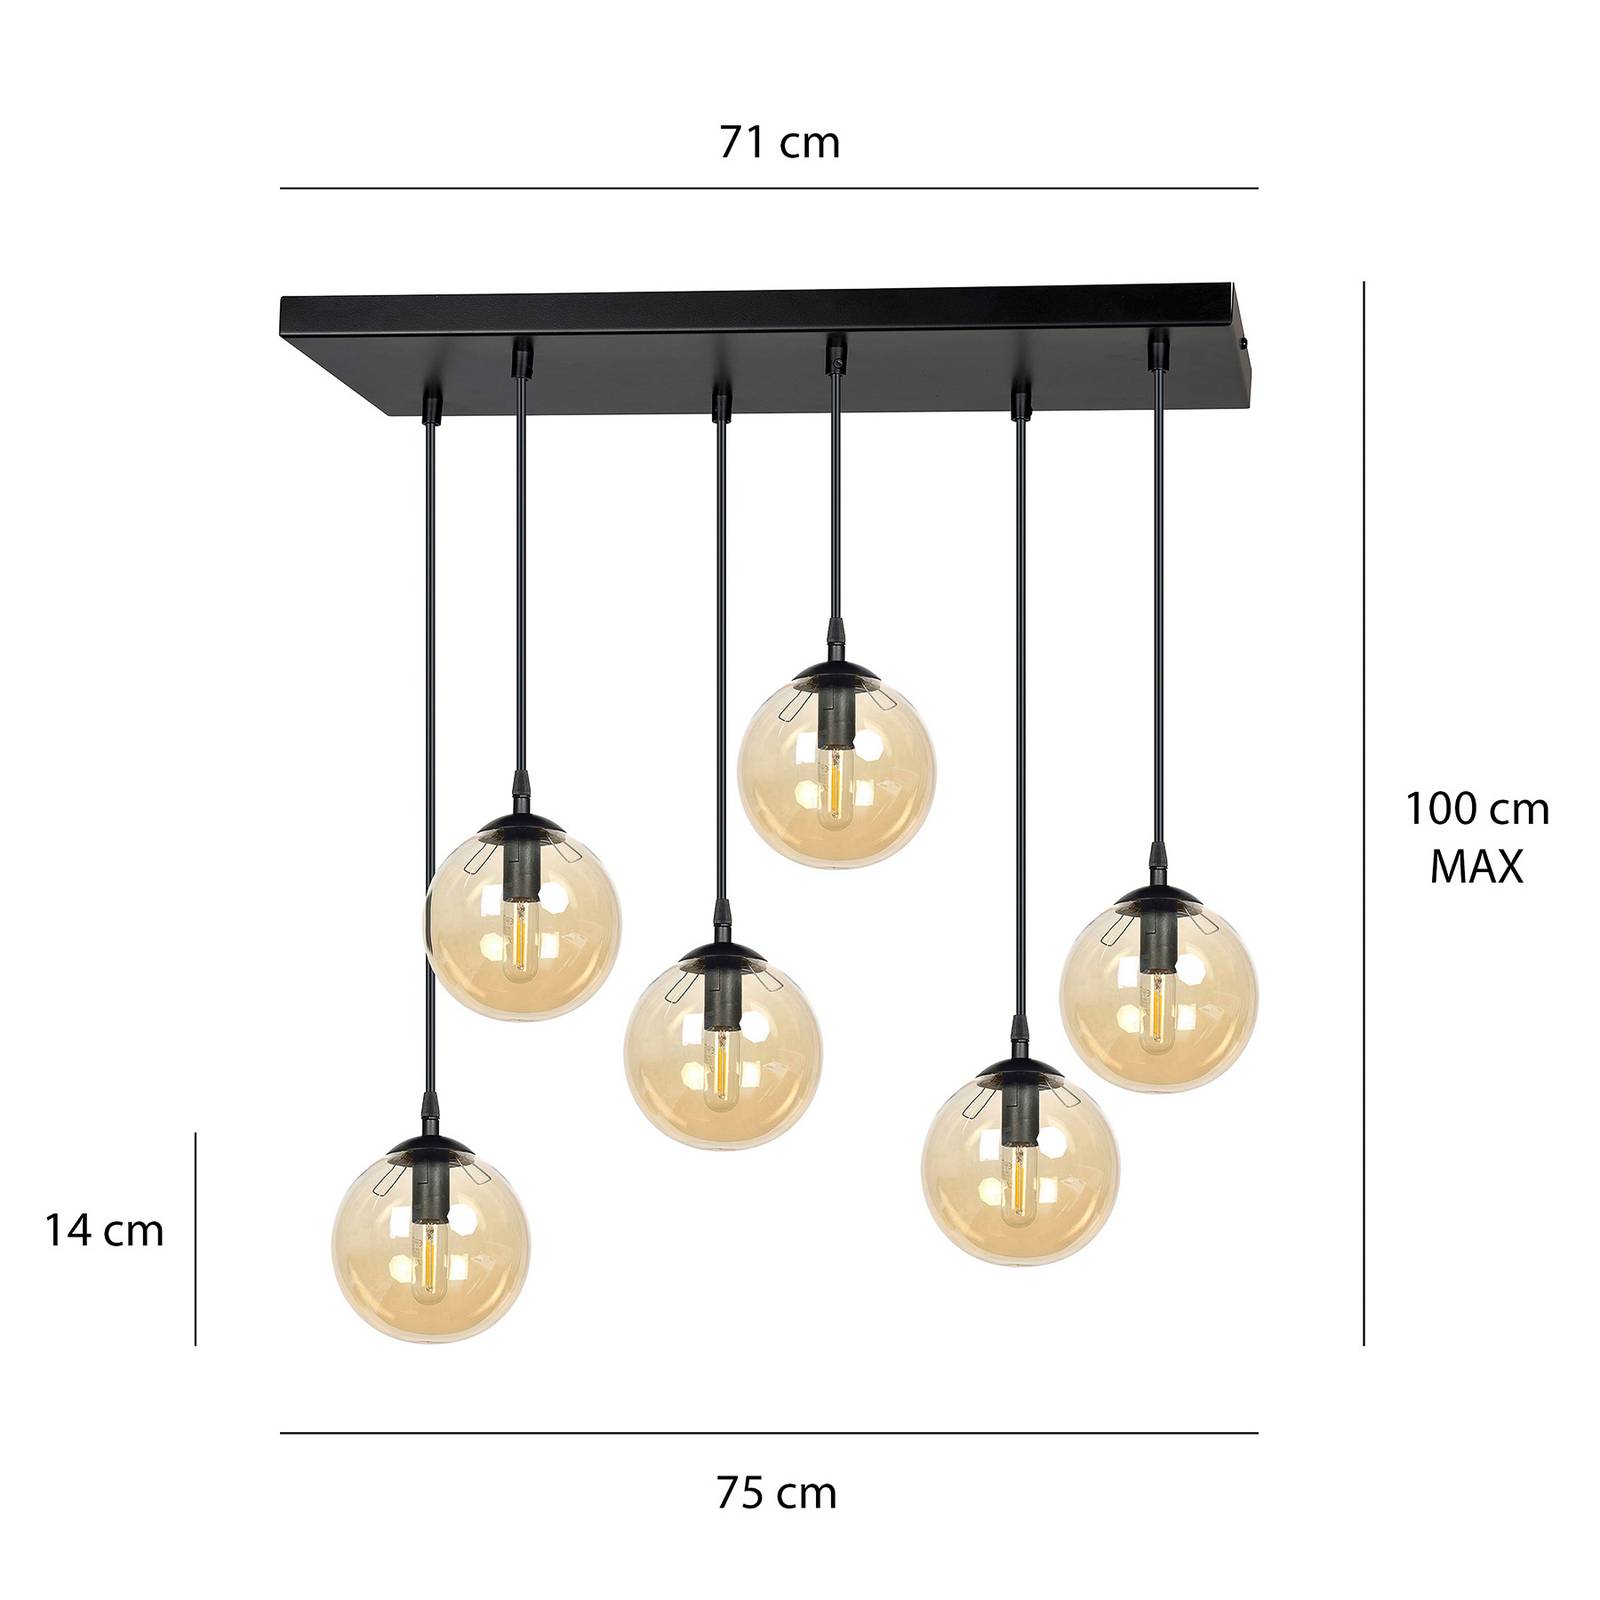 Emibig lighting üveges függőlámpa, 6 lámpás, fekete, borostyán, üveg, 75 cm